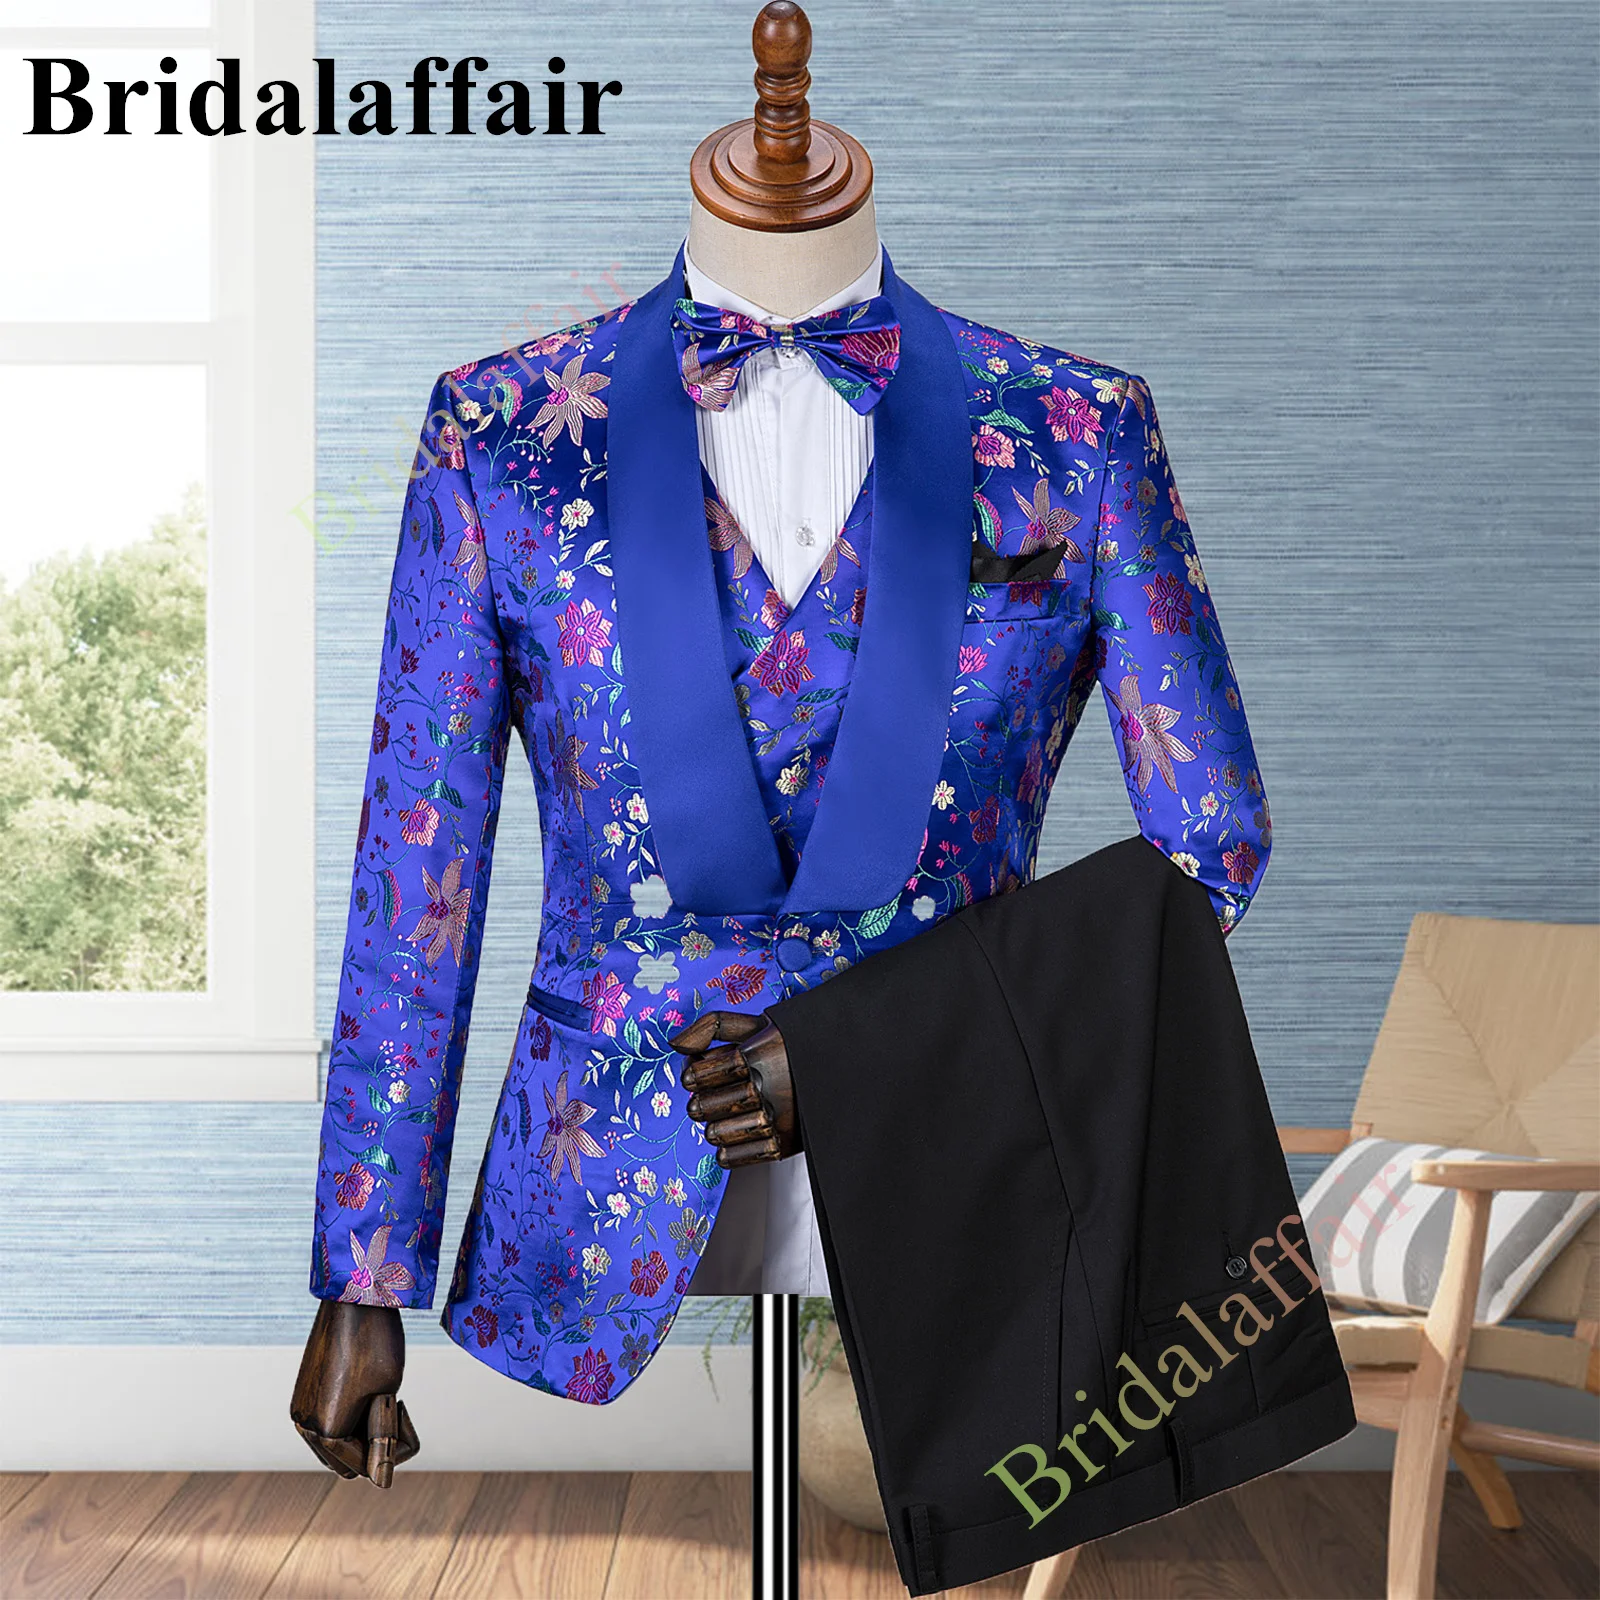 Bridalaffair Men's Royal Blue Suits Jacquard Floral Printed Prom Wedding Tuxedo Suit for Men 3pcs Blazer Jacket Vest Pant Set